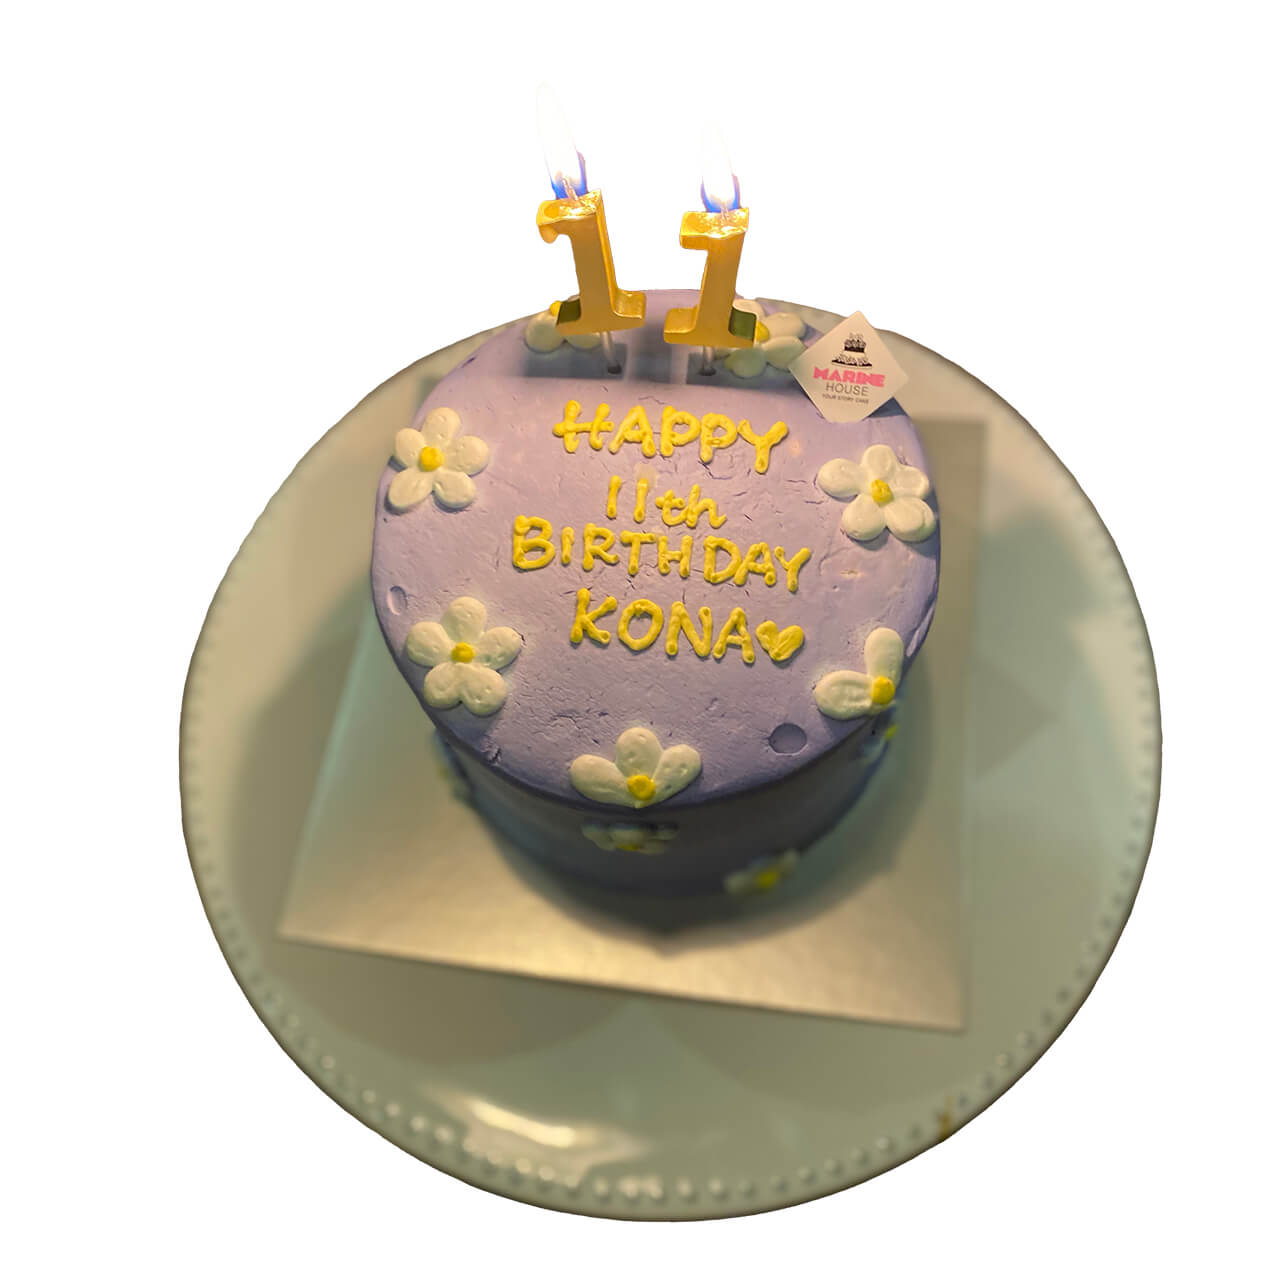 スタイリスト徳永千夏さんの子どもの誕生日のケーキ